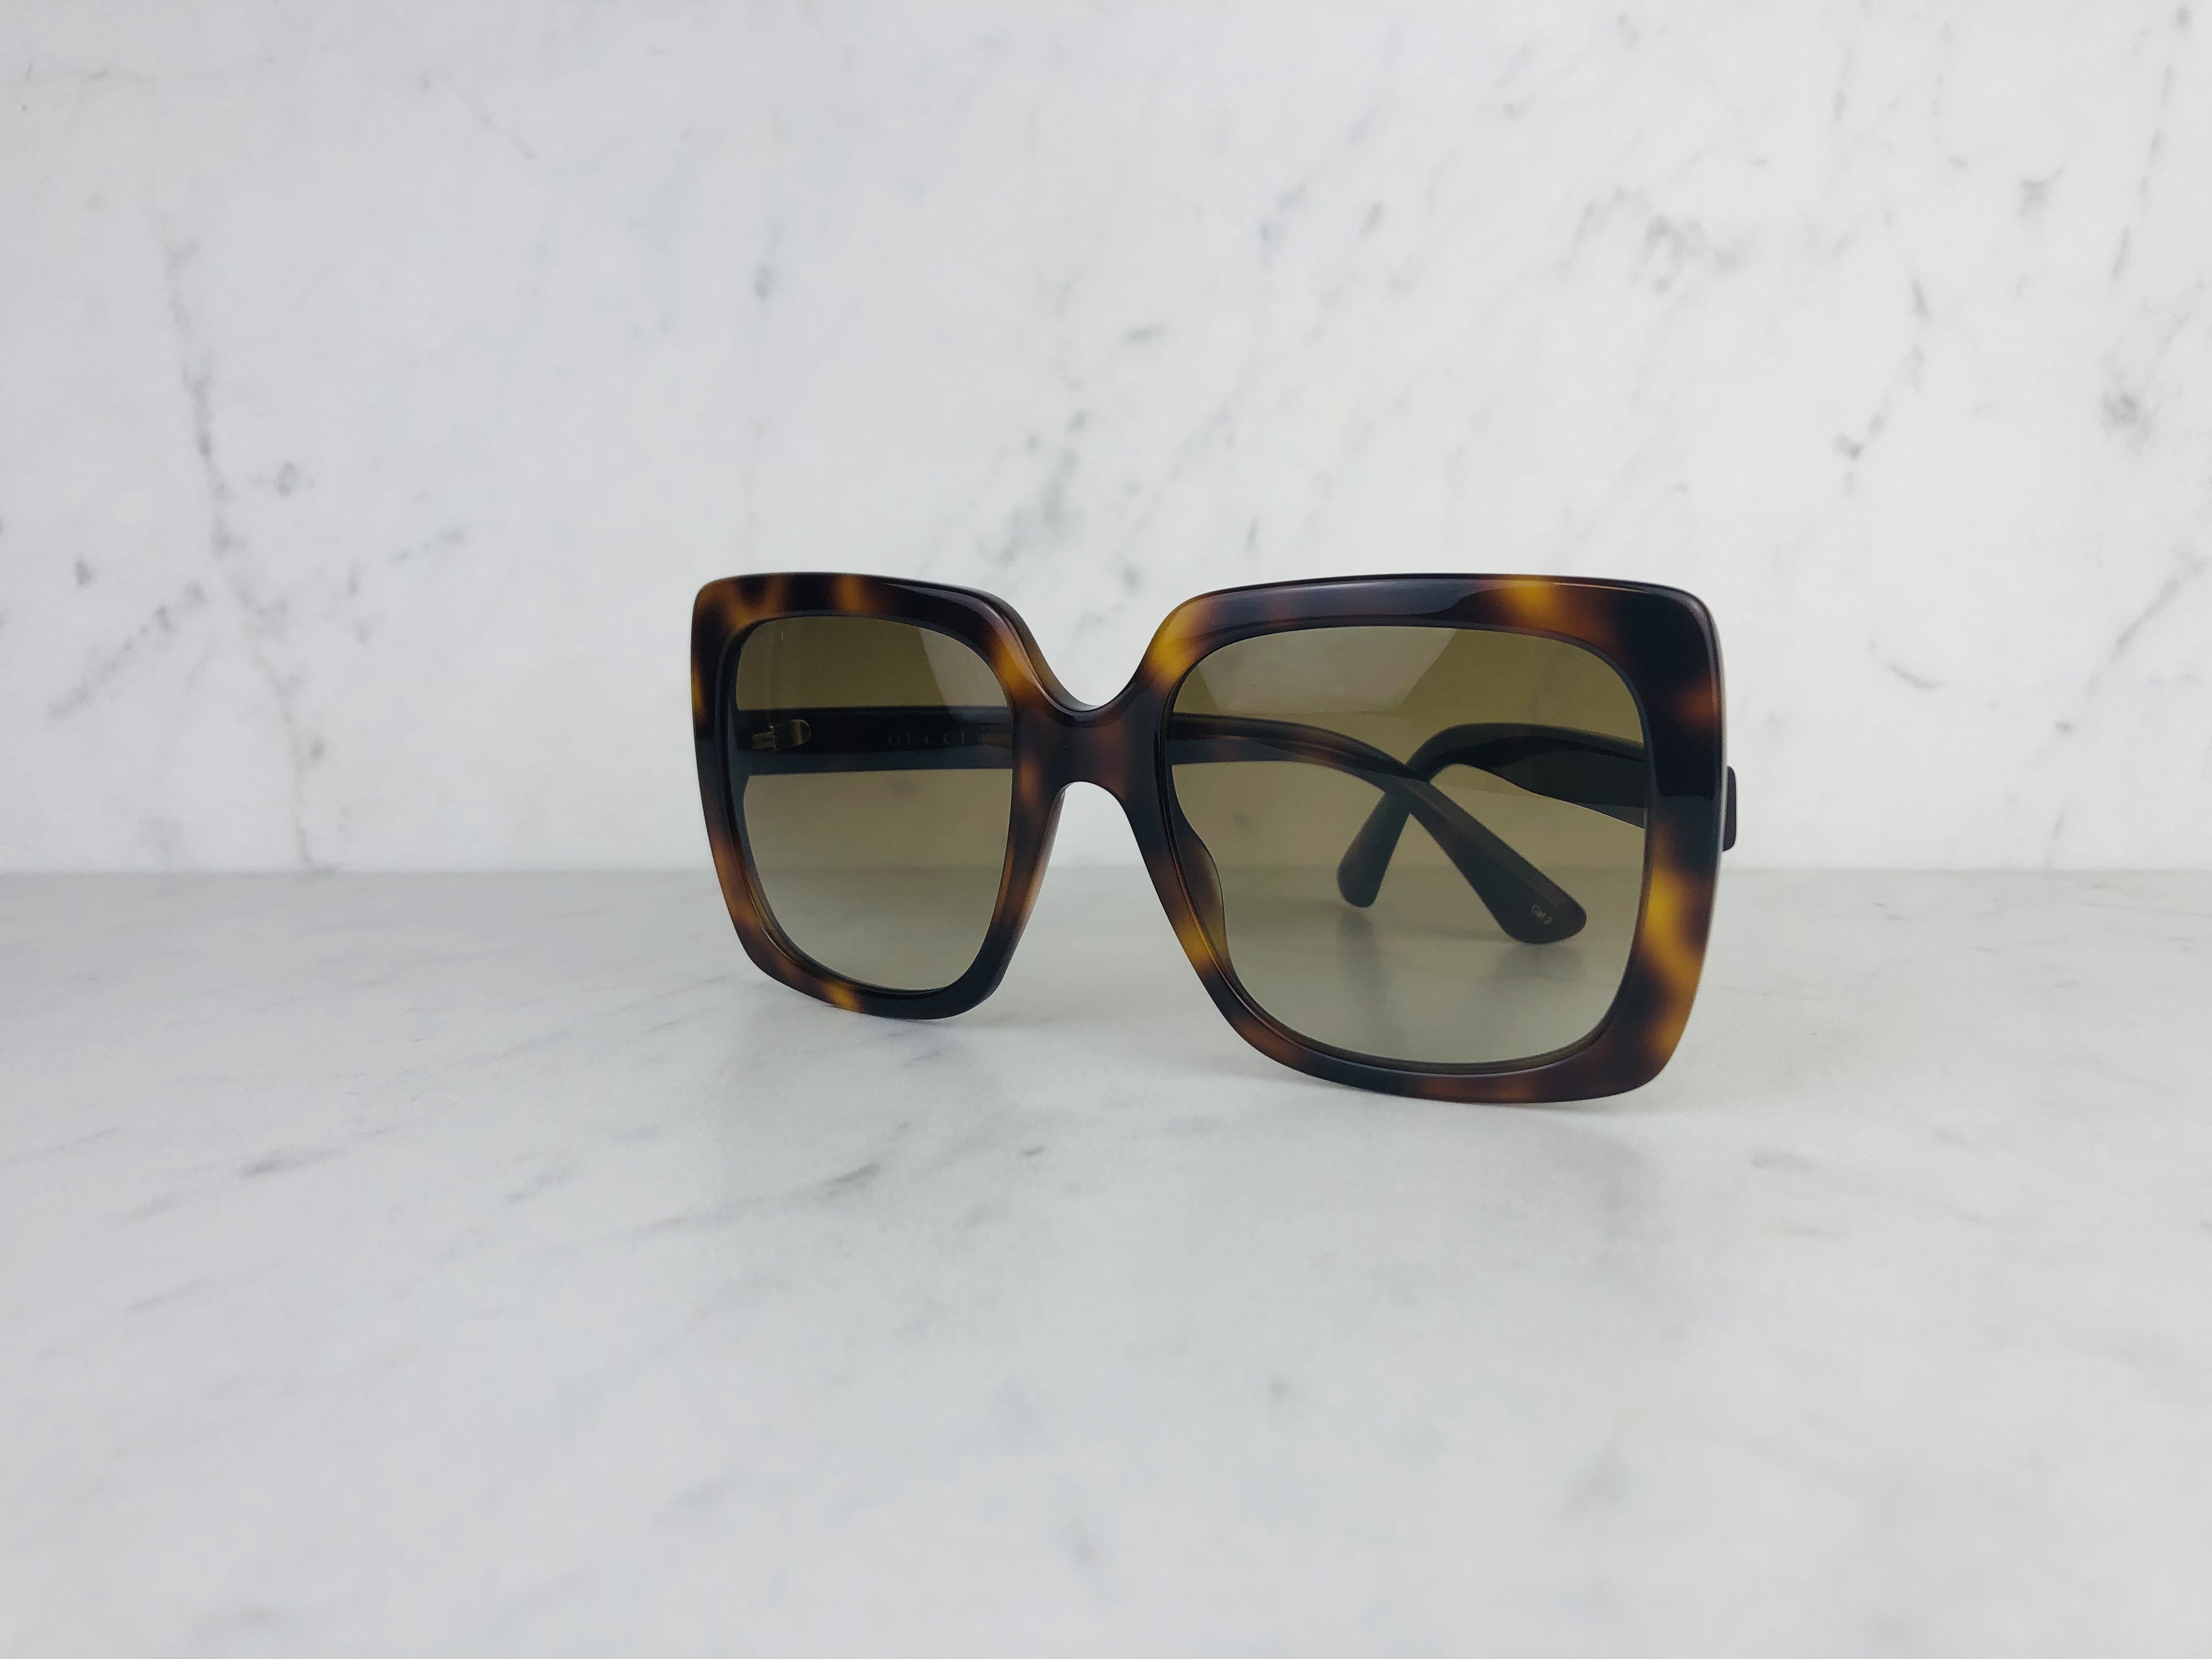 women's sunglasses tortoise color brand: Gucci, square shape, non-rx able